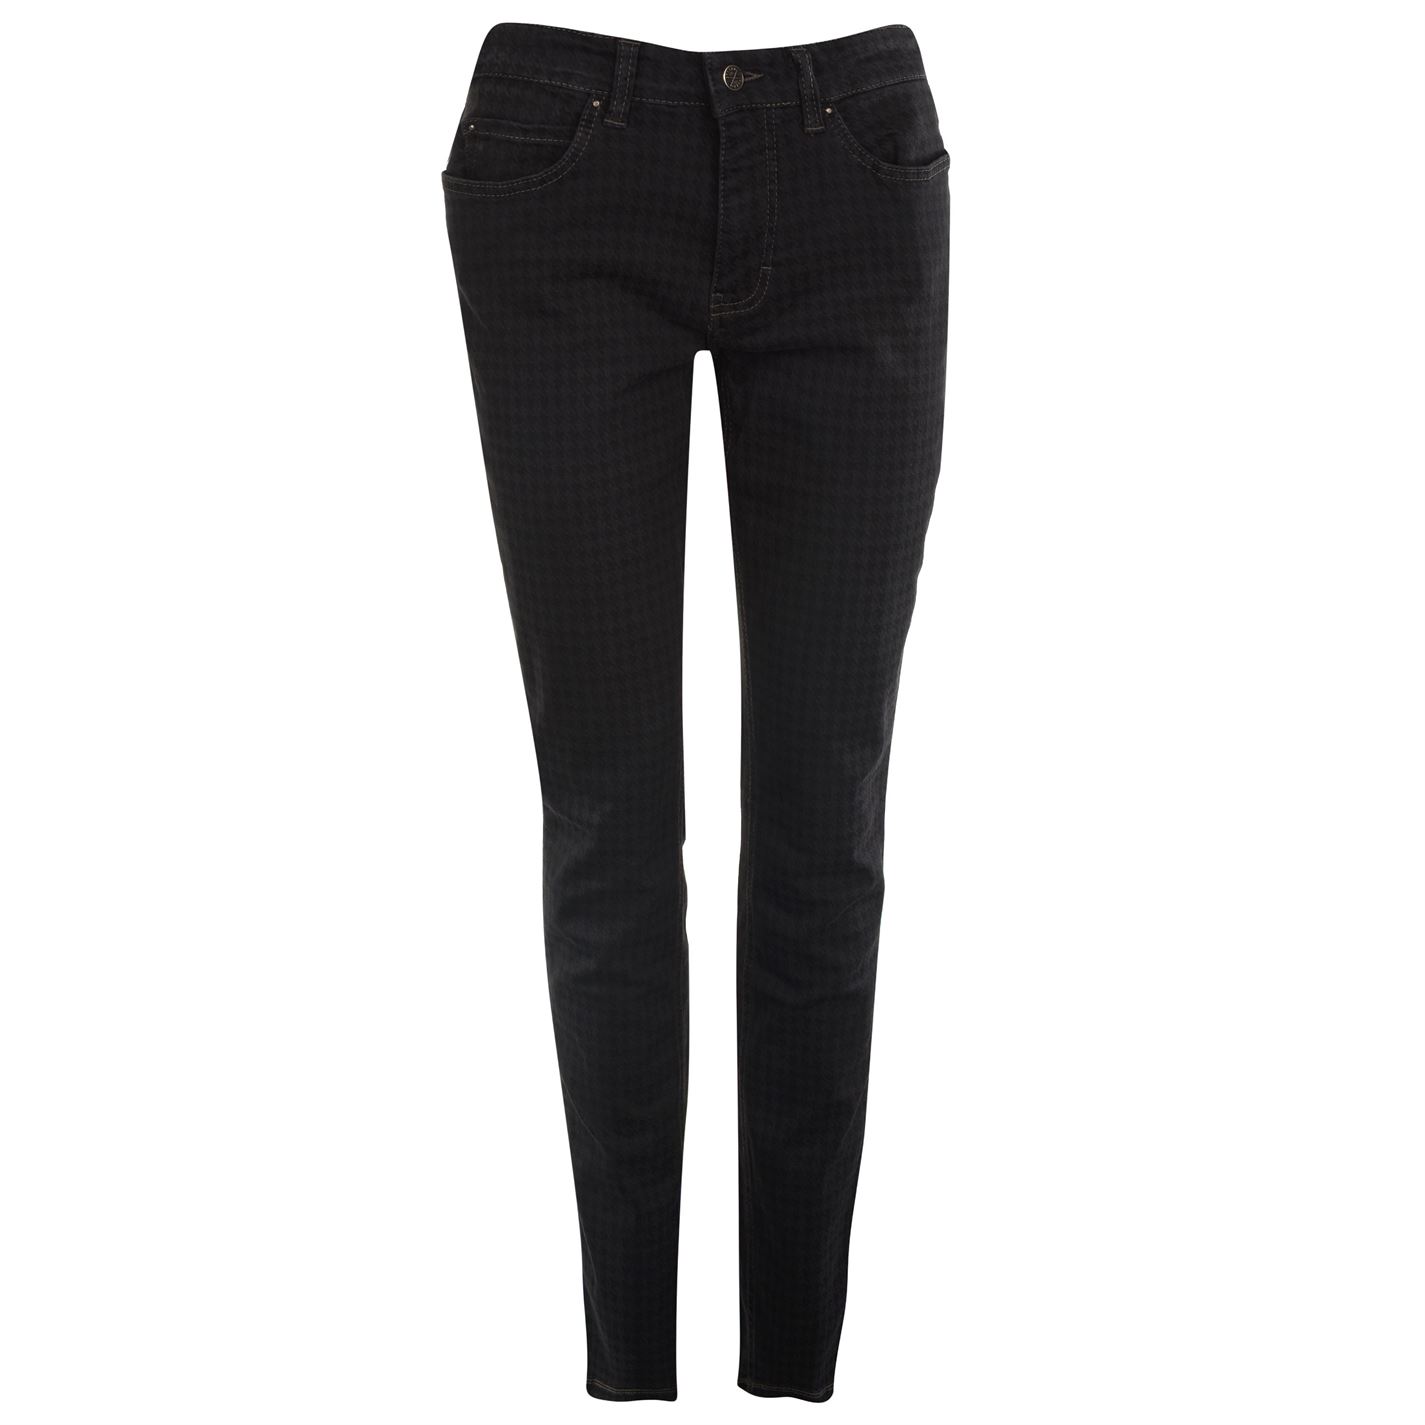 Pantaloni Mac Dream Skinny pentru femei negru inchis gri